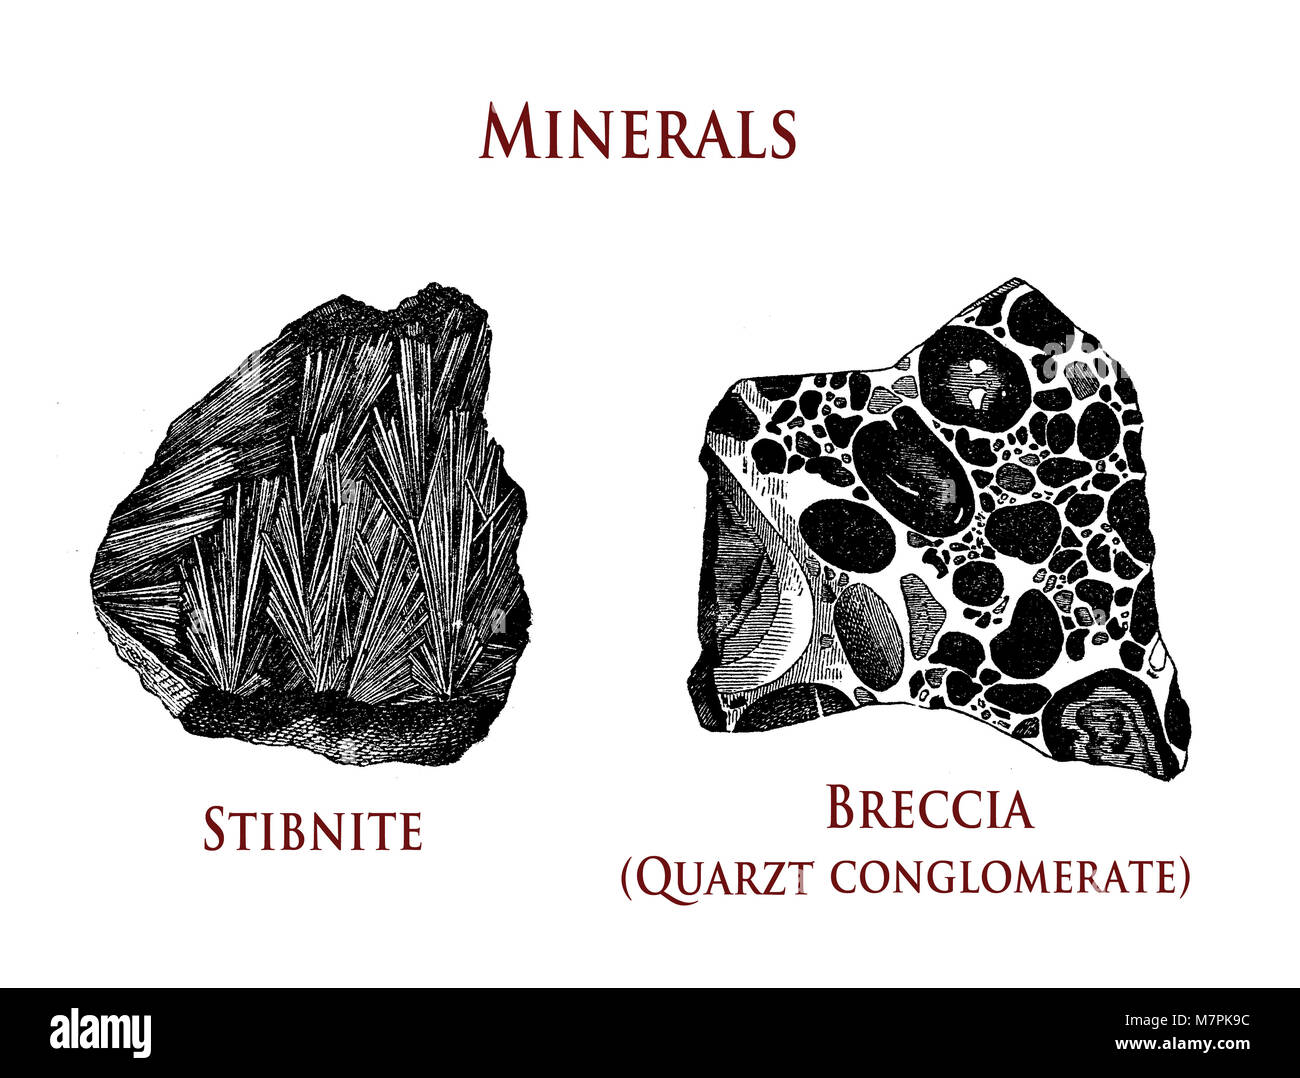 Illustrazione vintage di minerali: stibnite e breccia Foto Stock